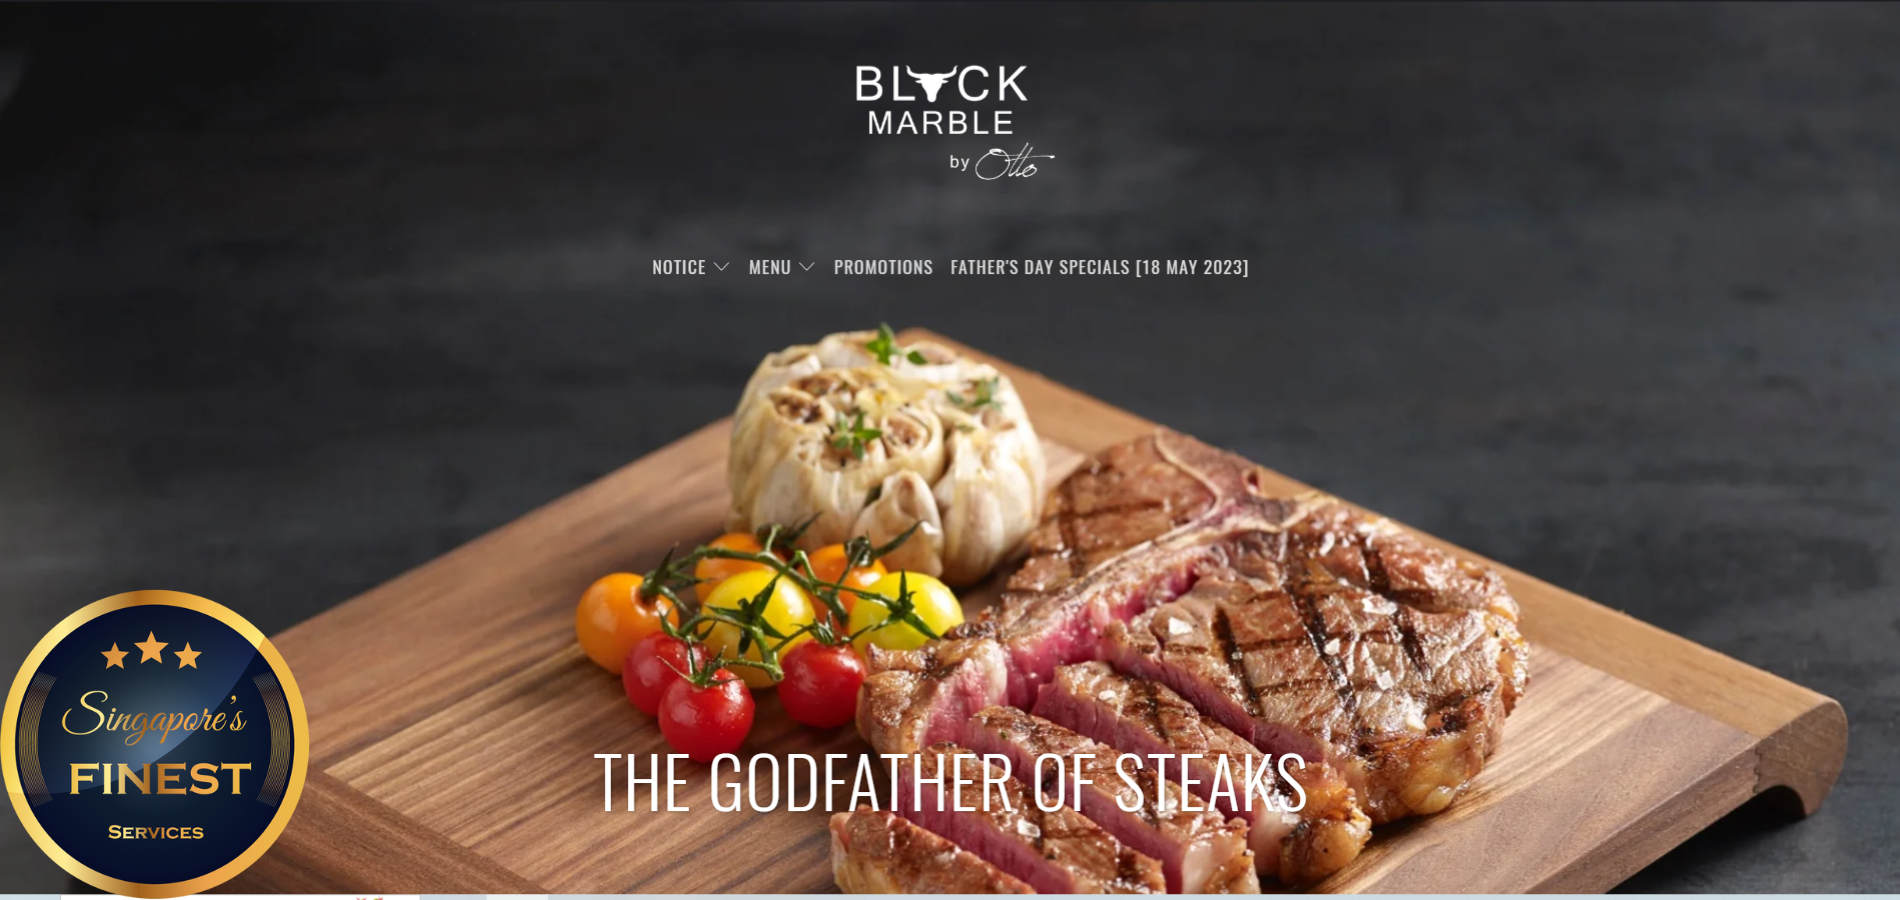 The Finest Steak Restaurants in Singapore